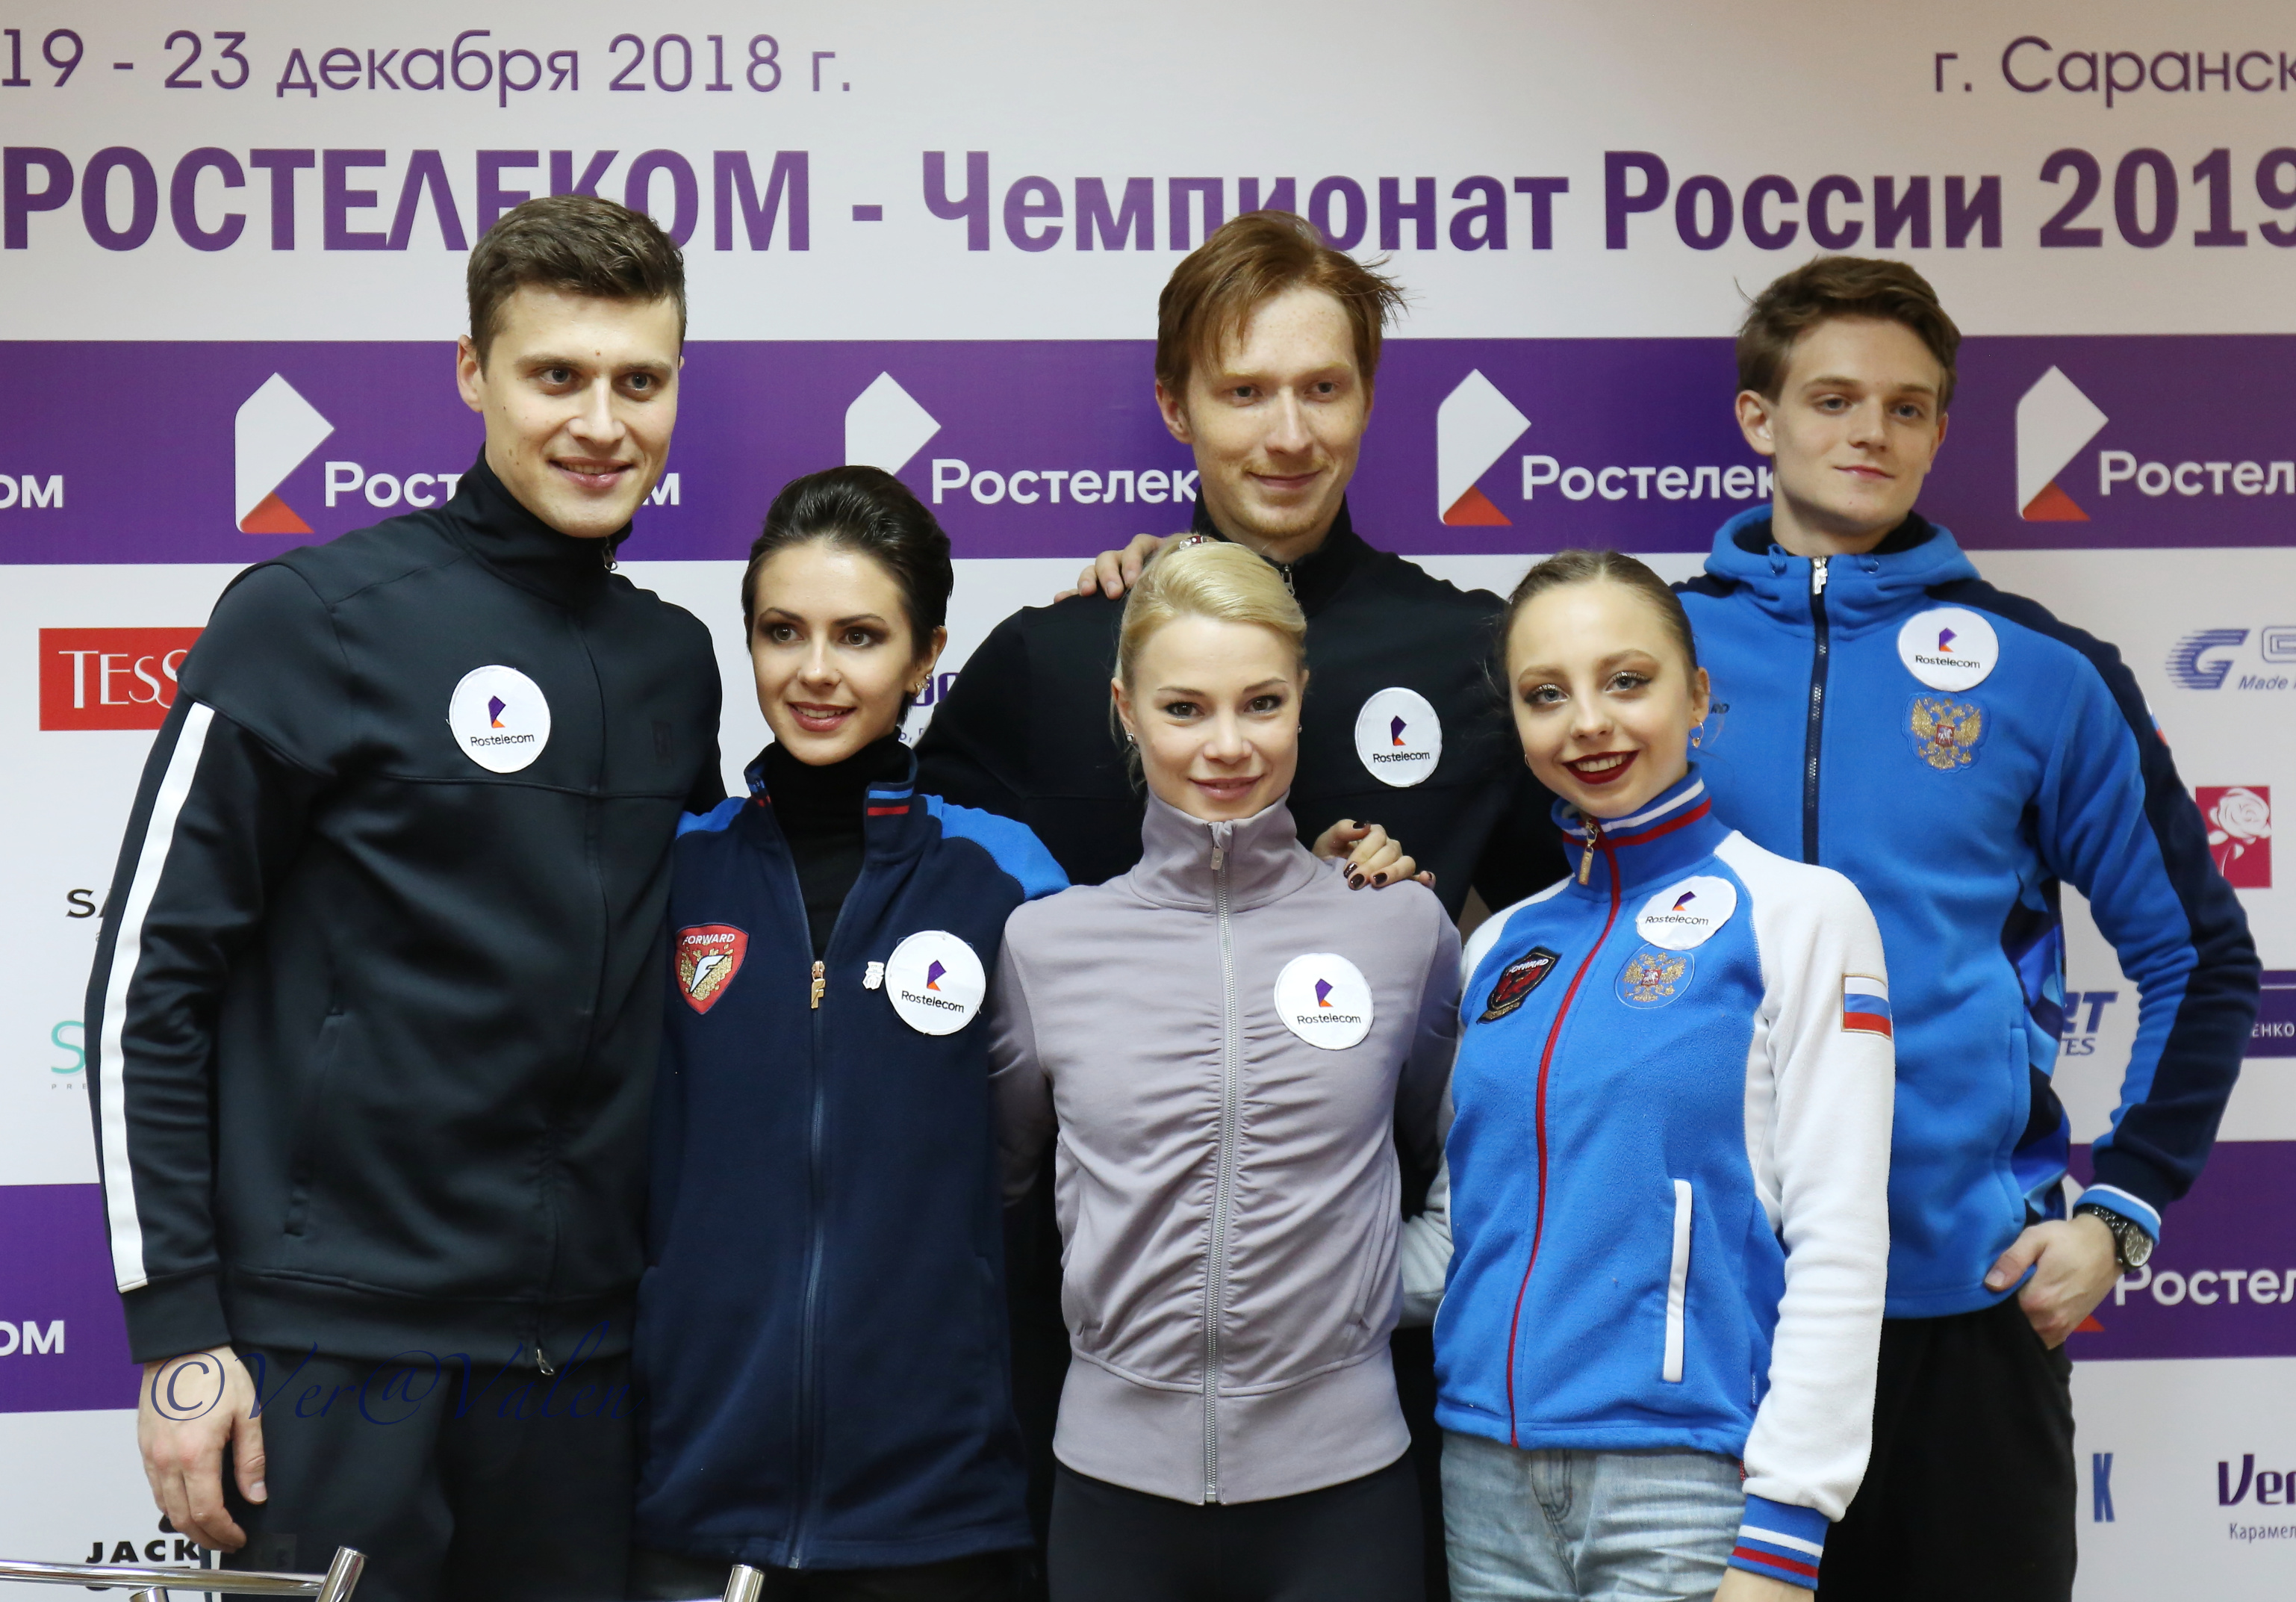 Fotoreportage: Russische Meisterschaften – Paare (KP)